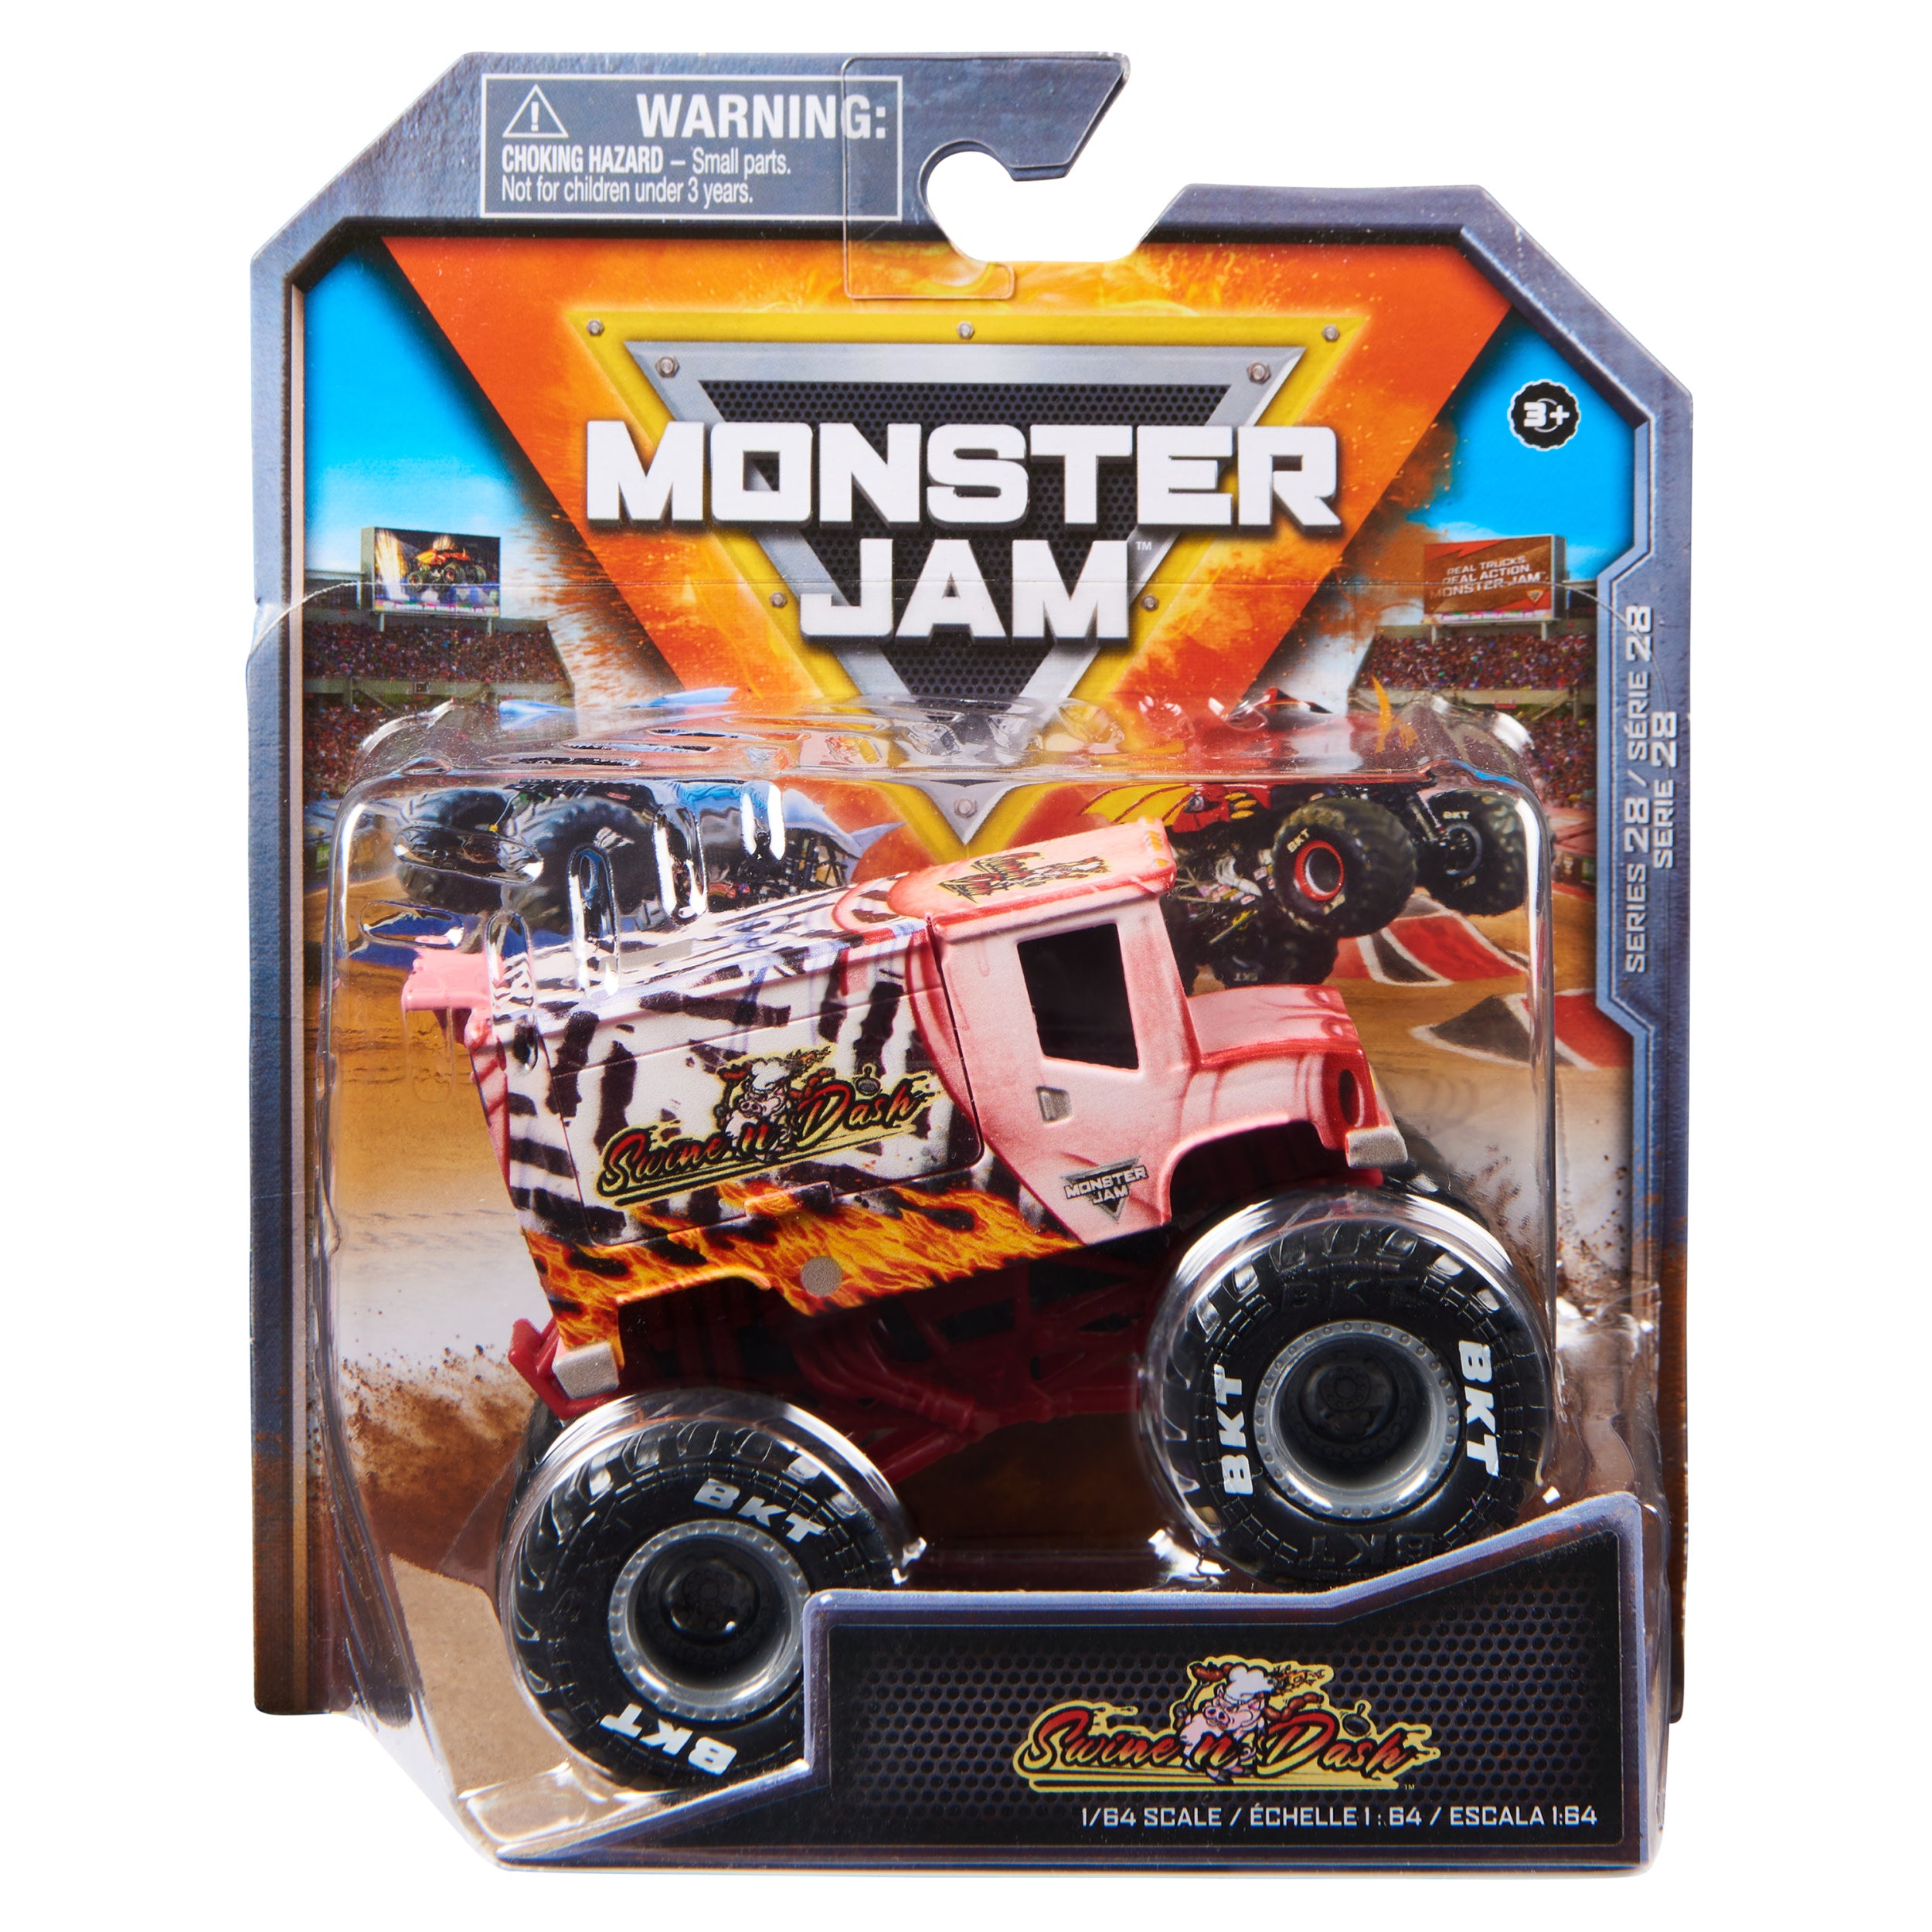 Monster Jam: Swine N Dash Escala 1/64